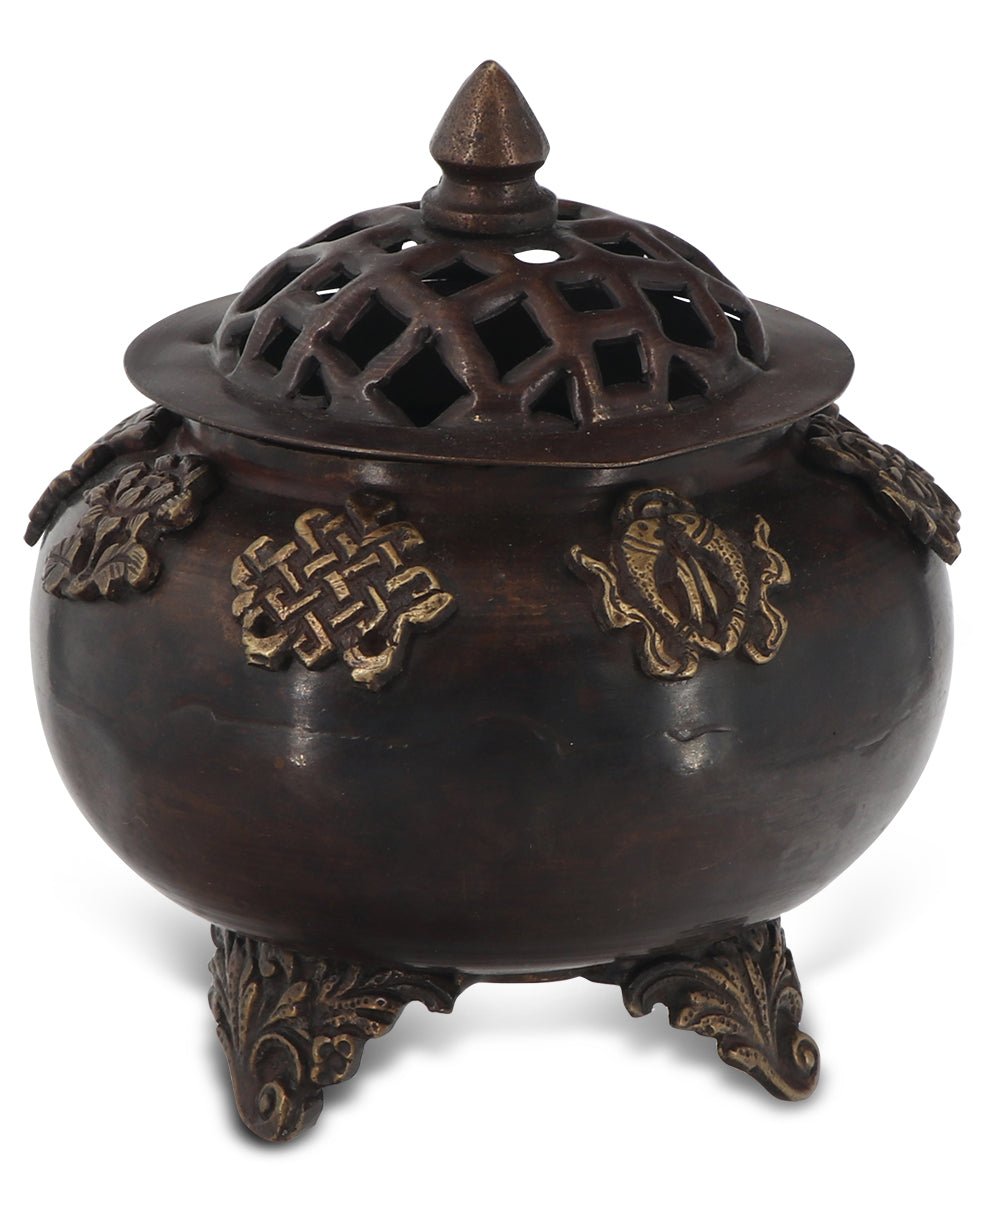 Multi-Purpose Tibetan Auspicious Symbols Bowl or Incense Burner - Incense Holders